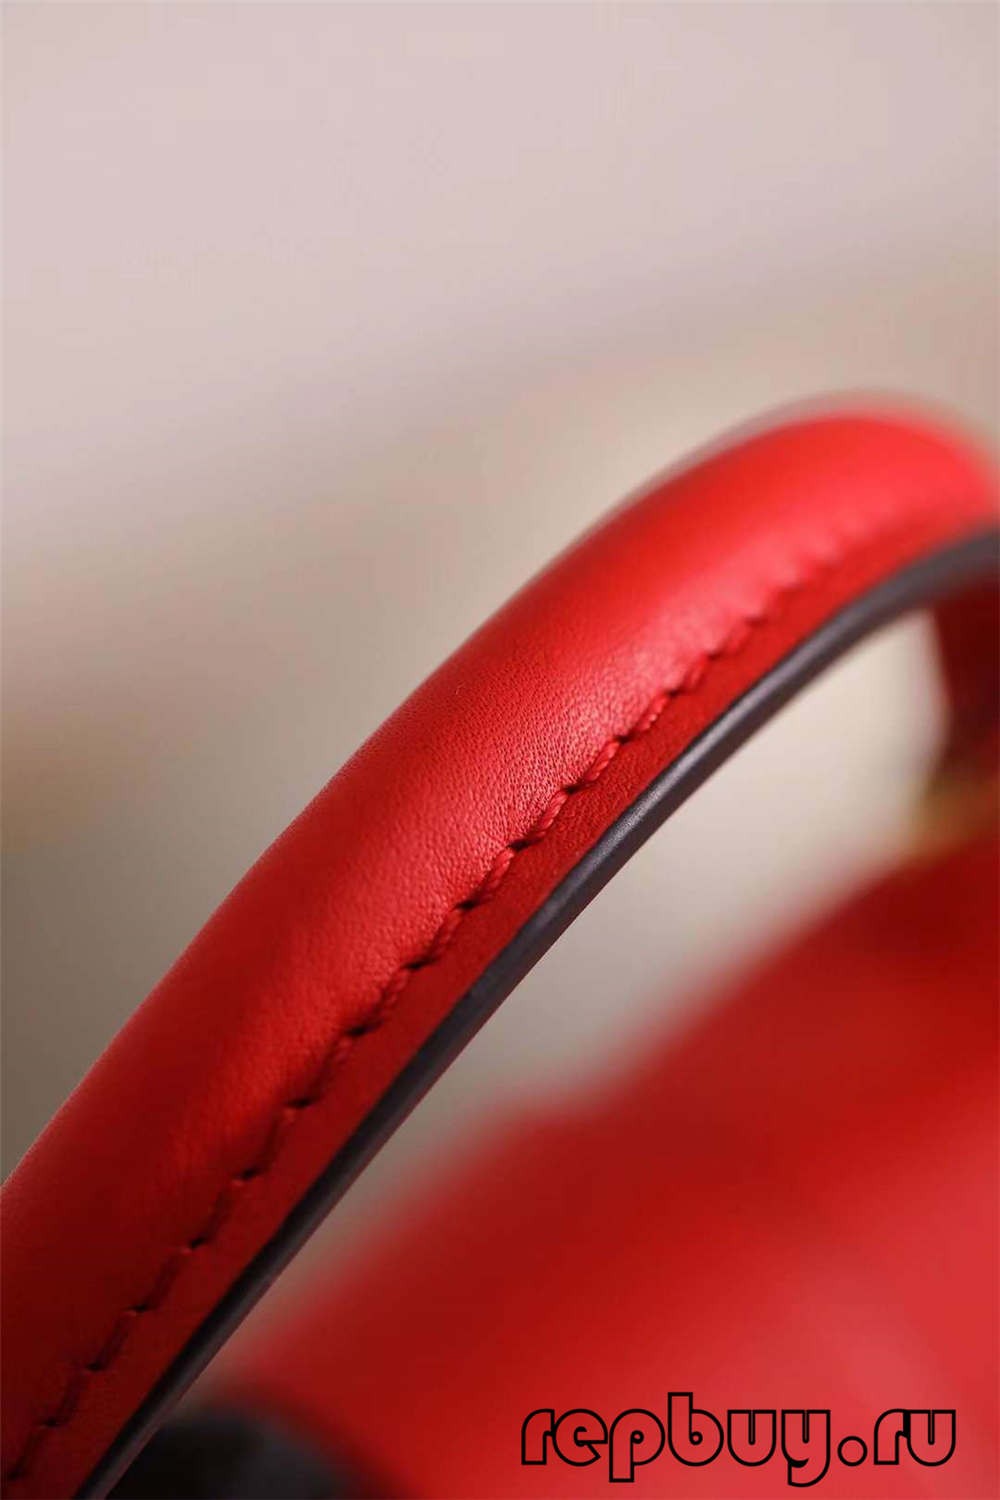 Louis Vuitton M44322 20cm Lock BB Red Top replikové tašky (nejnovější 2022)-Nejkvalitnější falešná taška Louis Vuitton Online Store, Replica designer bag ru